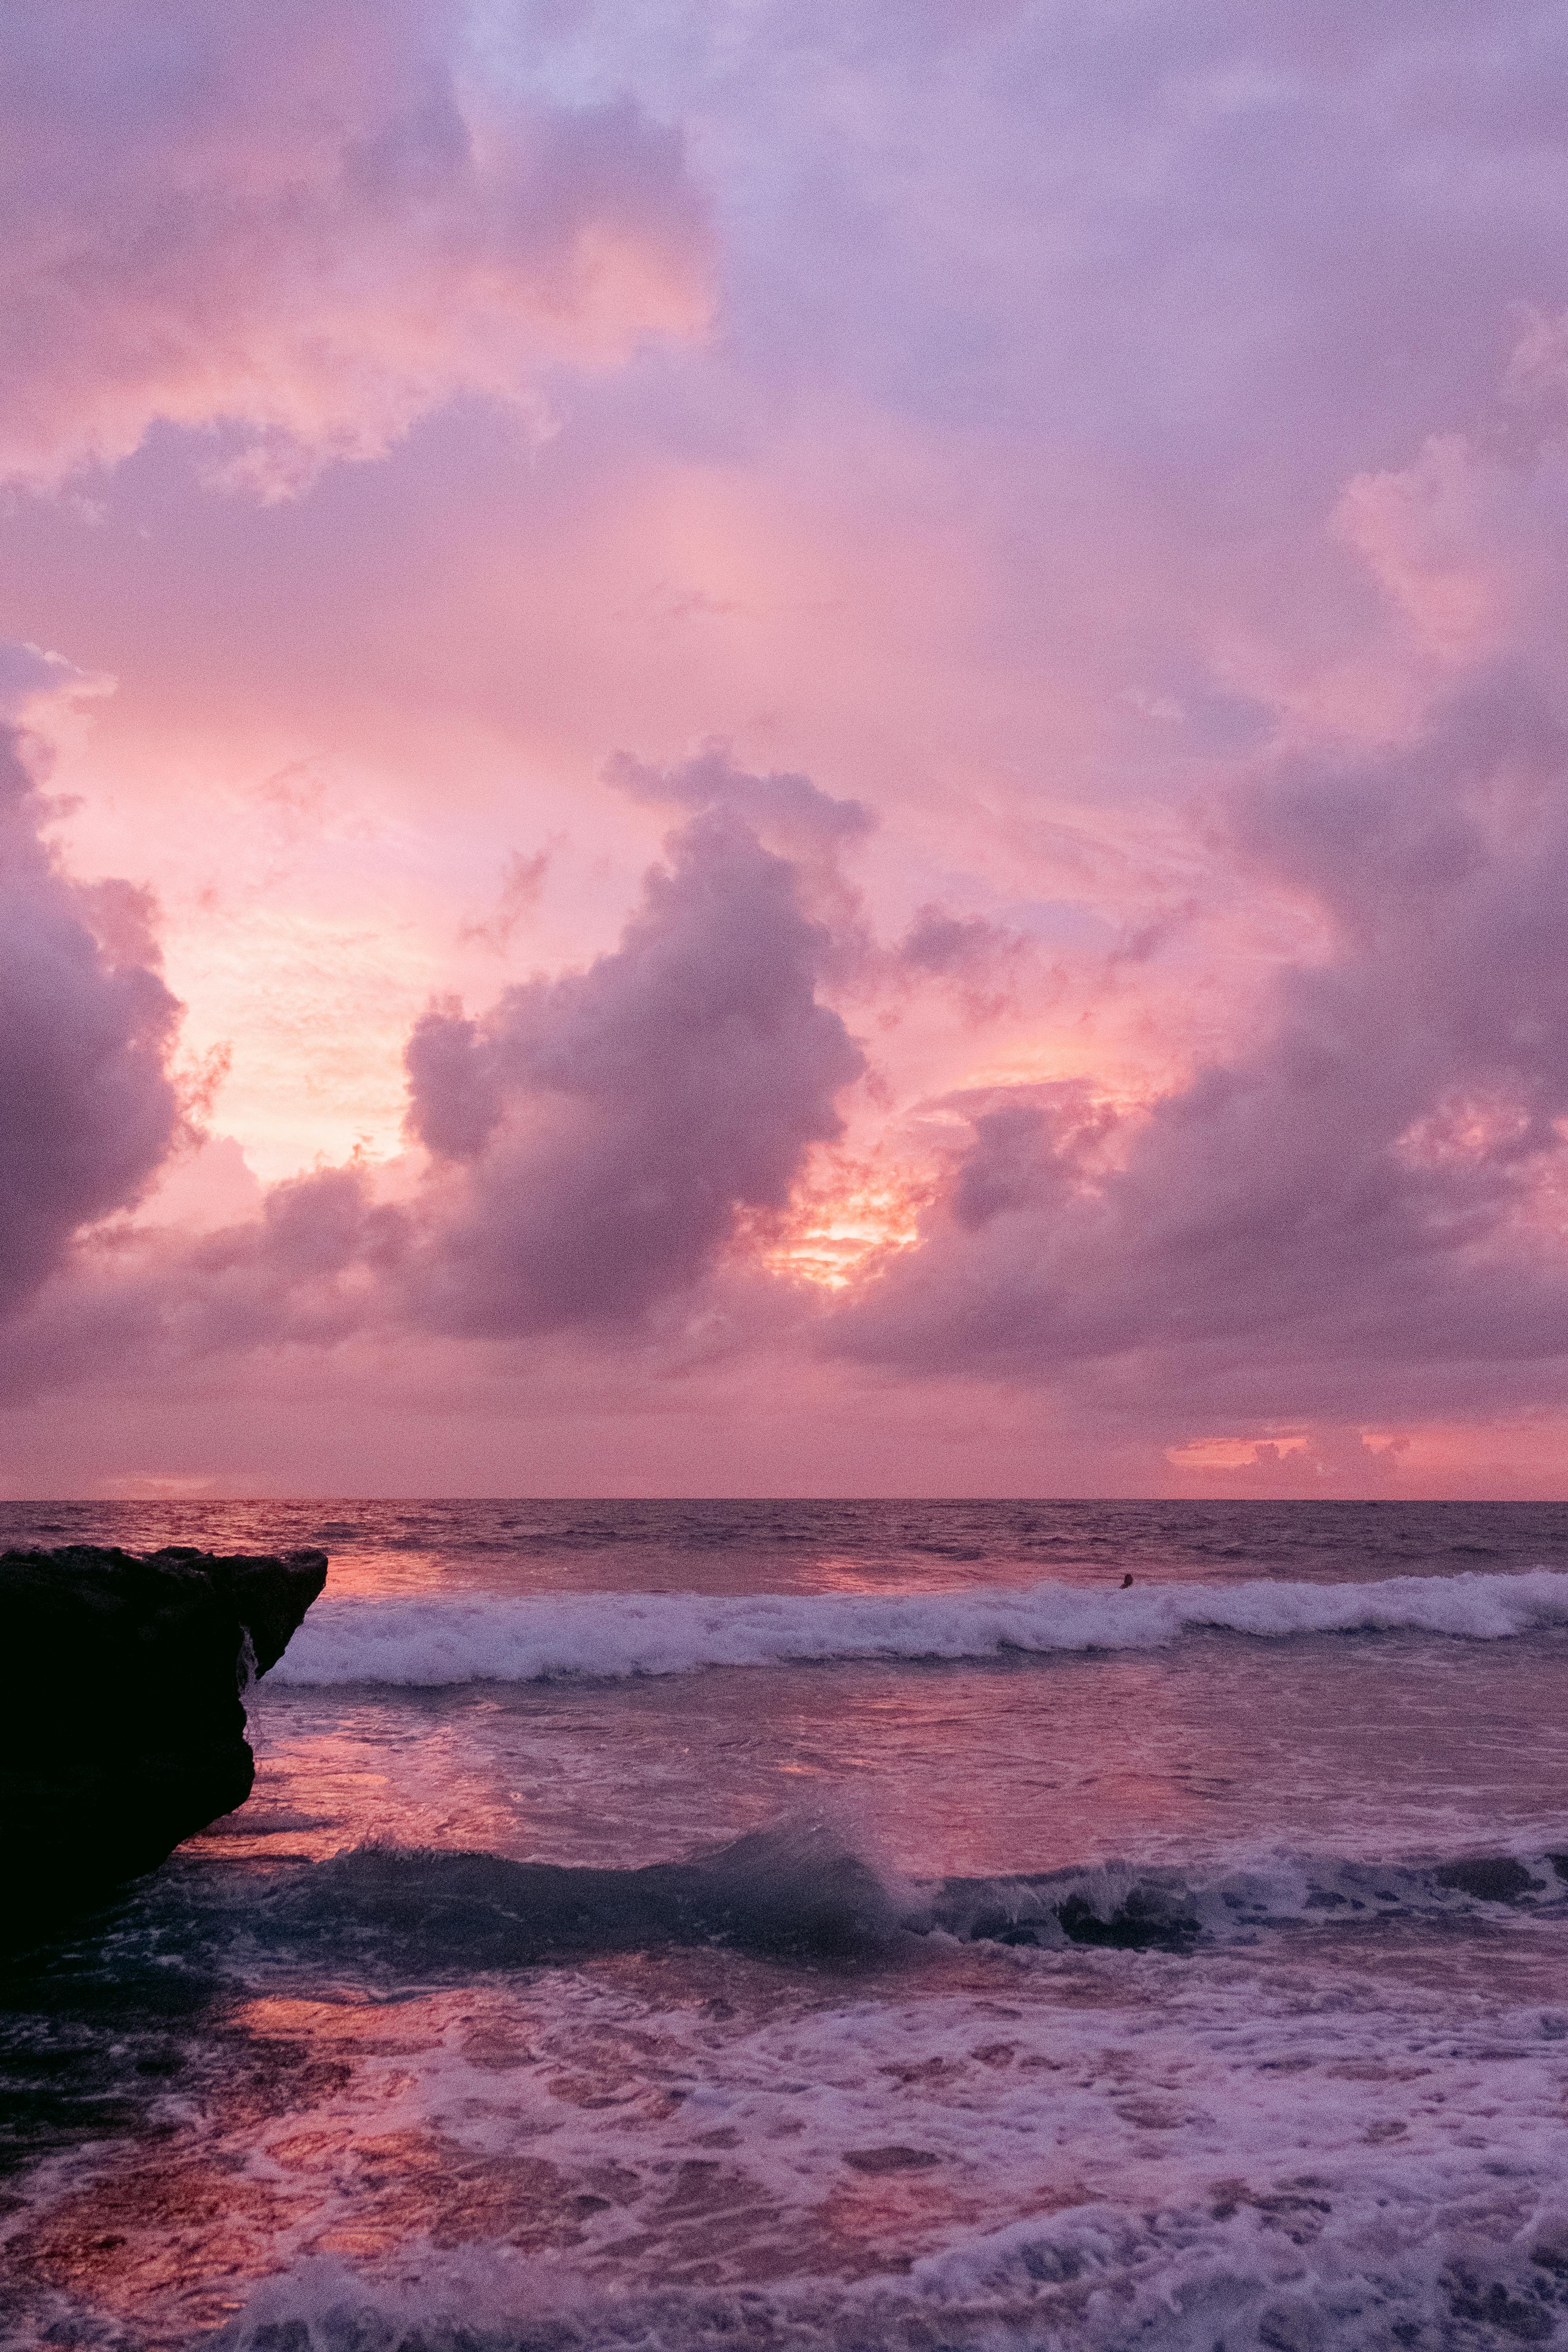 Muốn tìm kiếm những bức ảnh bãi biển màu hồng miễn phí tốt nhất trên mạng? Hãy tìm kiếm ngay hình ảnh bãi biển màu hồng trên internet và bạn sẽ không phải thất vọng. Bộ sưu tập ảnh tuyệt đẹp này sẽ đem lại cho bạn cảm giác bình yên và hạnh phúc. Nhanh tay tải ảnh về bộ sưu tập của bạn và thưởng thức những khoảnh khắc đầy tuyệt vời này.